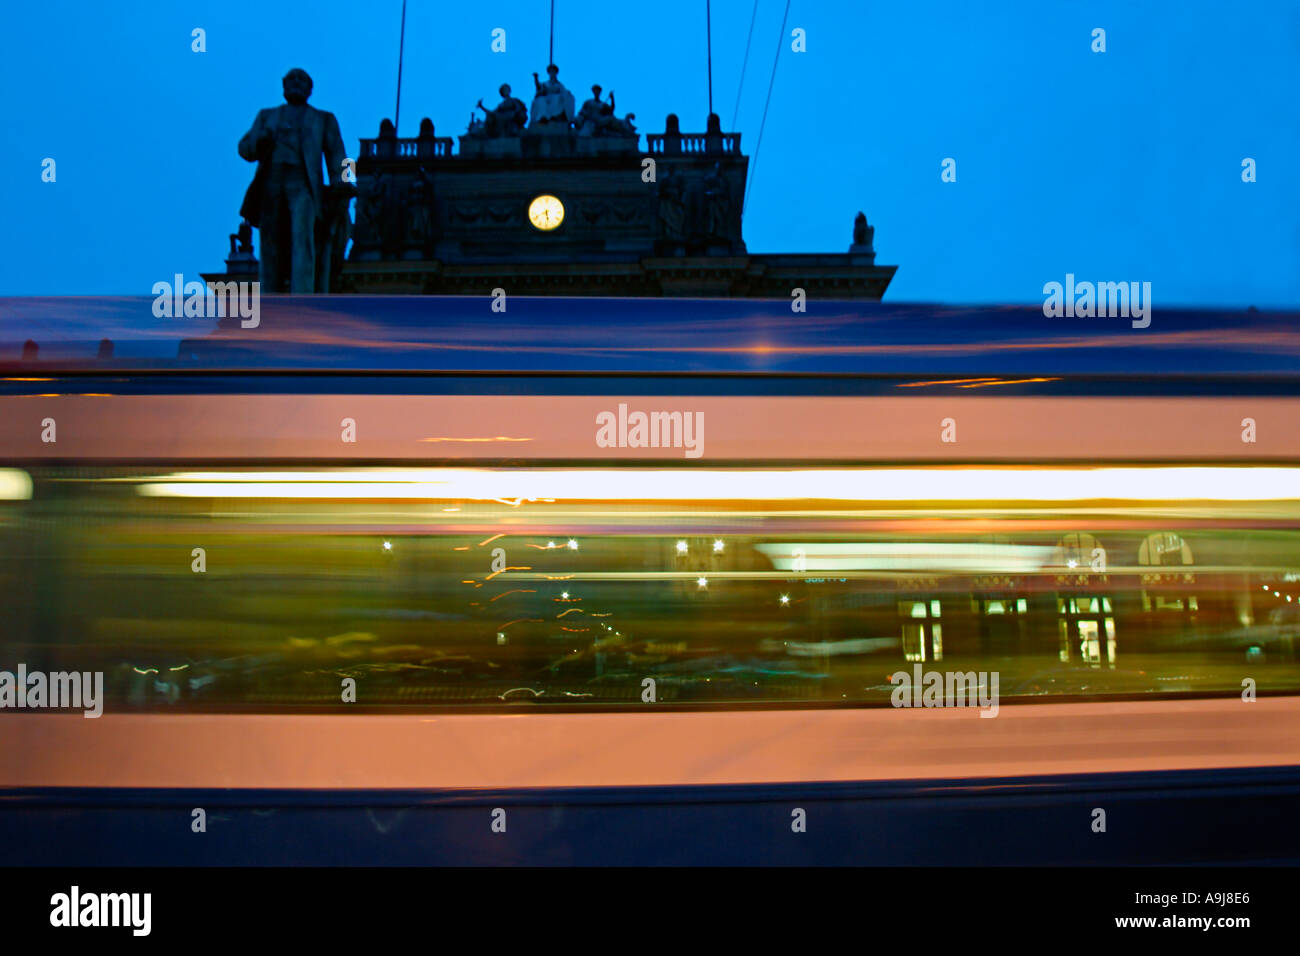 Zurich railway station tram blurred twilight Stock Photo